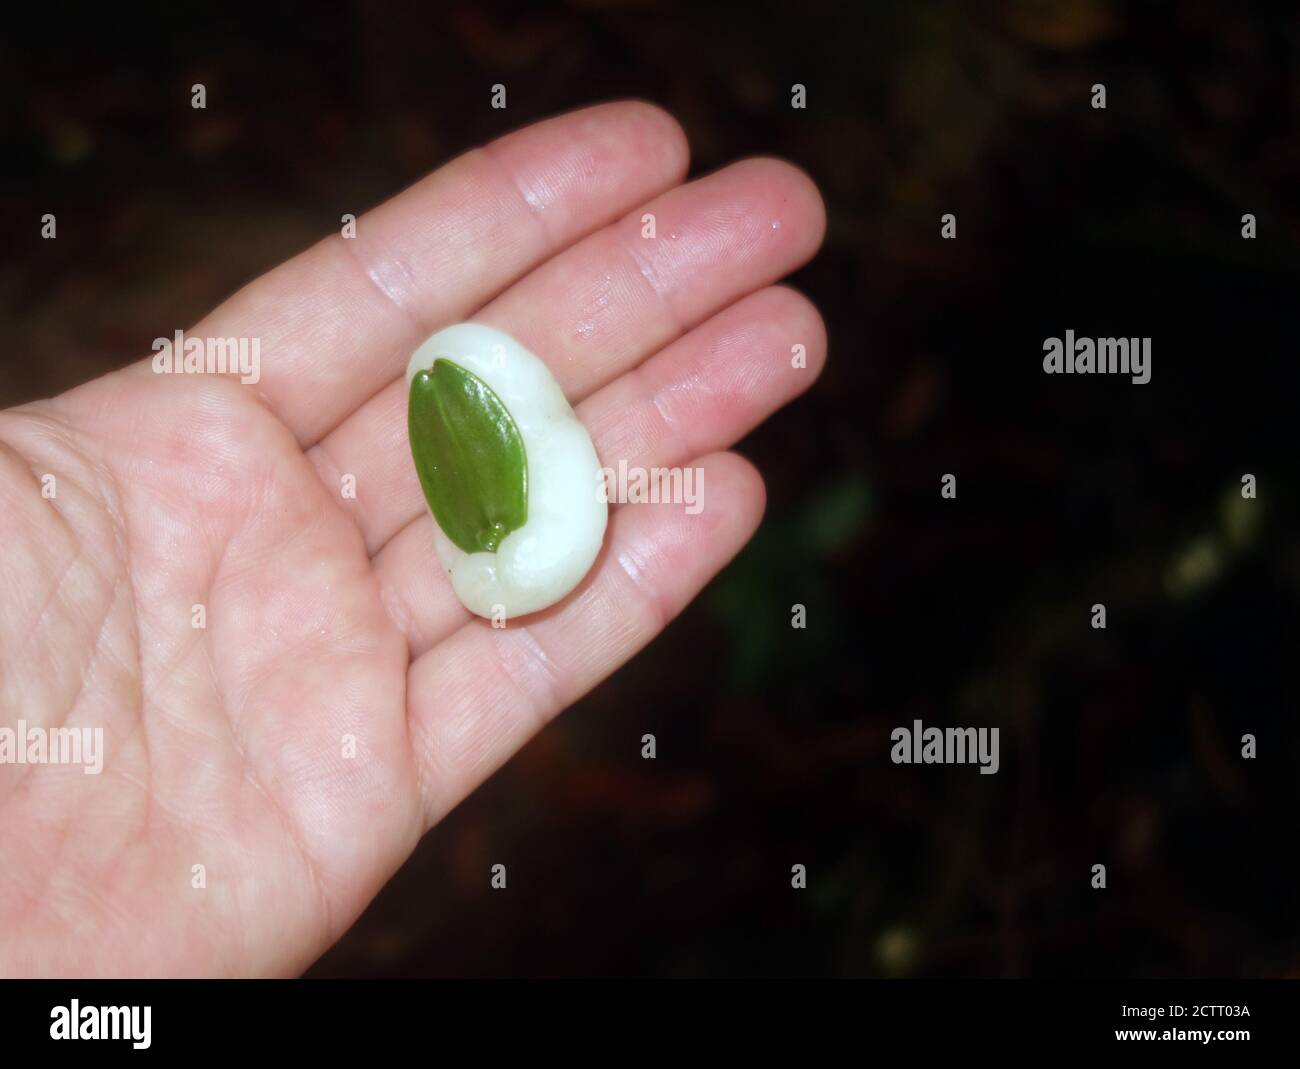 La fruta de cera, o la baya de nube (Irvingbaileya australis), fruta extraña de la selva tropical en el Parque Nacional de Wooroonooran, Queensland, Australia. Sin RM Foto de stock